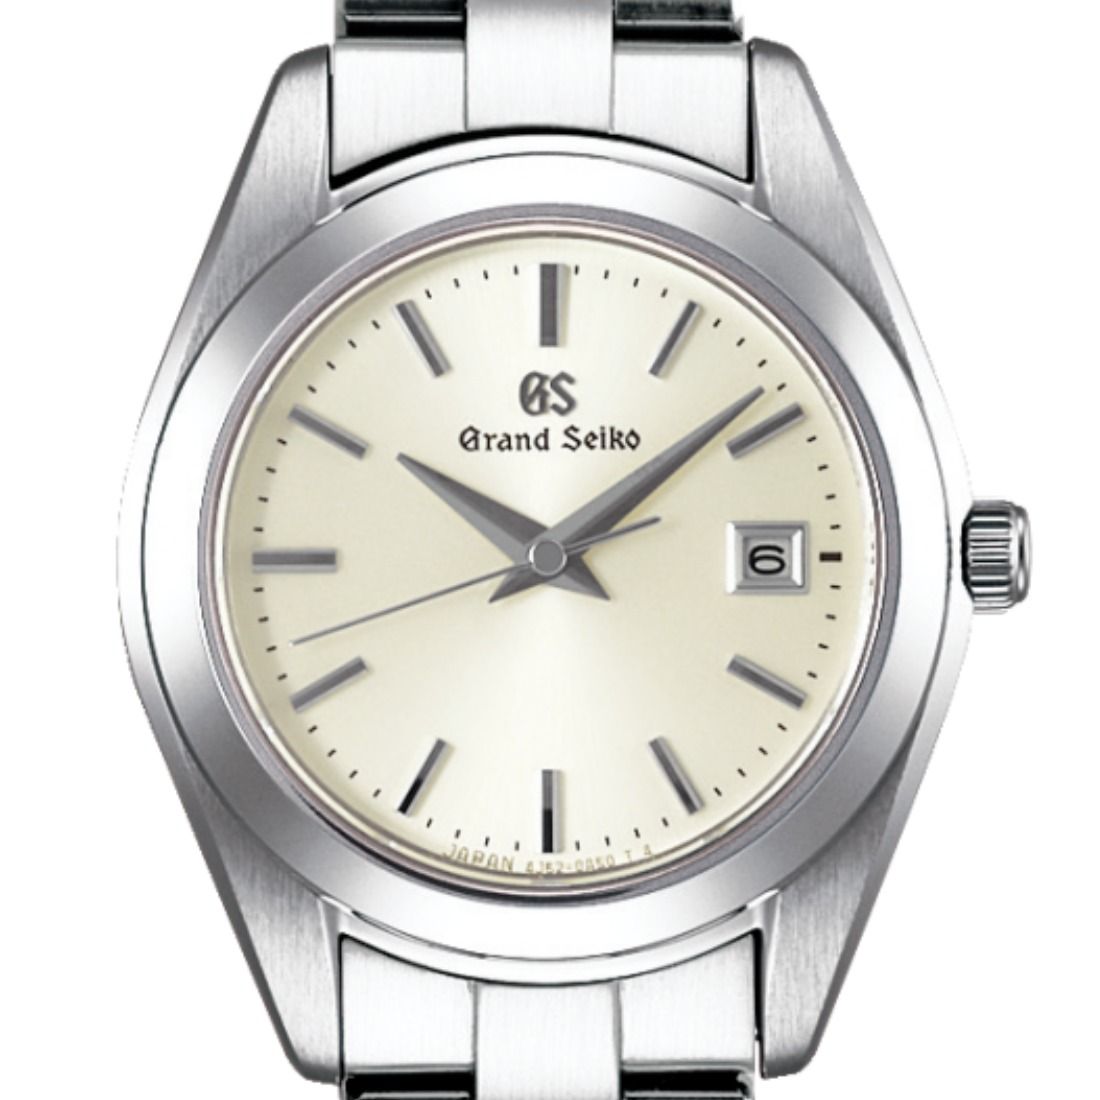 GS Grand Seiko STGF265 STGF265G Heritage Collection Beige Dial Quartz Analog Watch